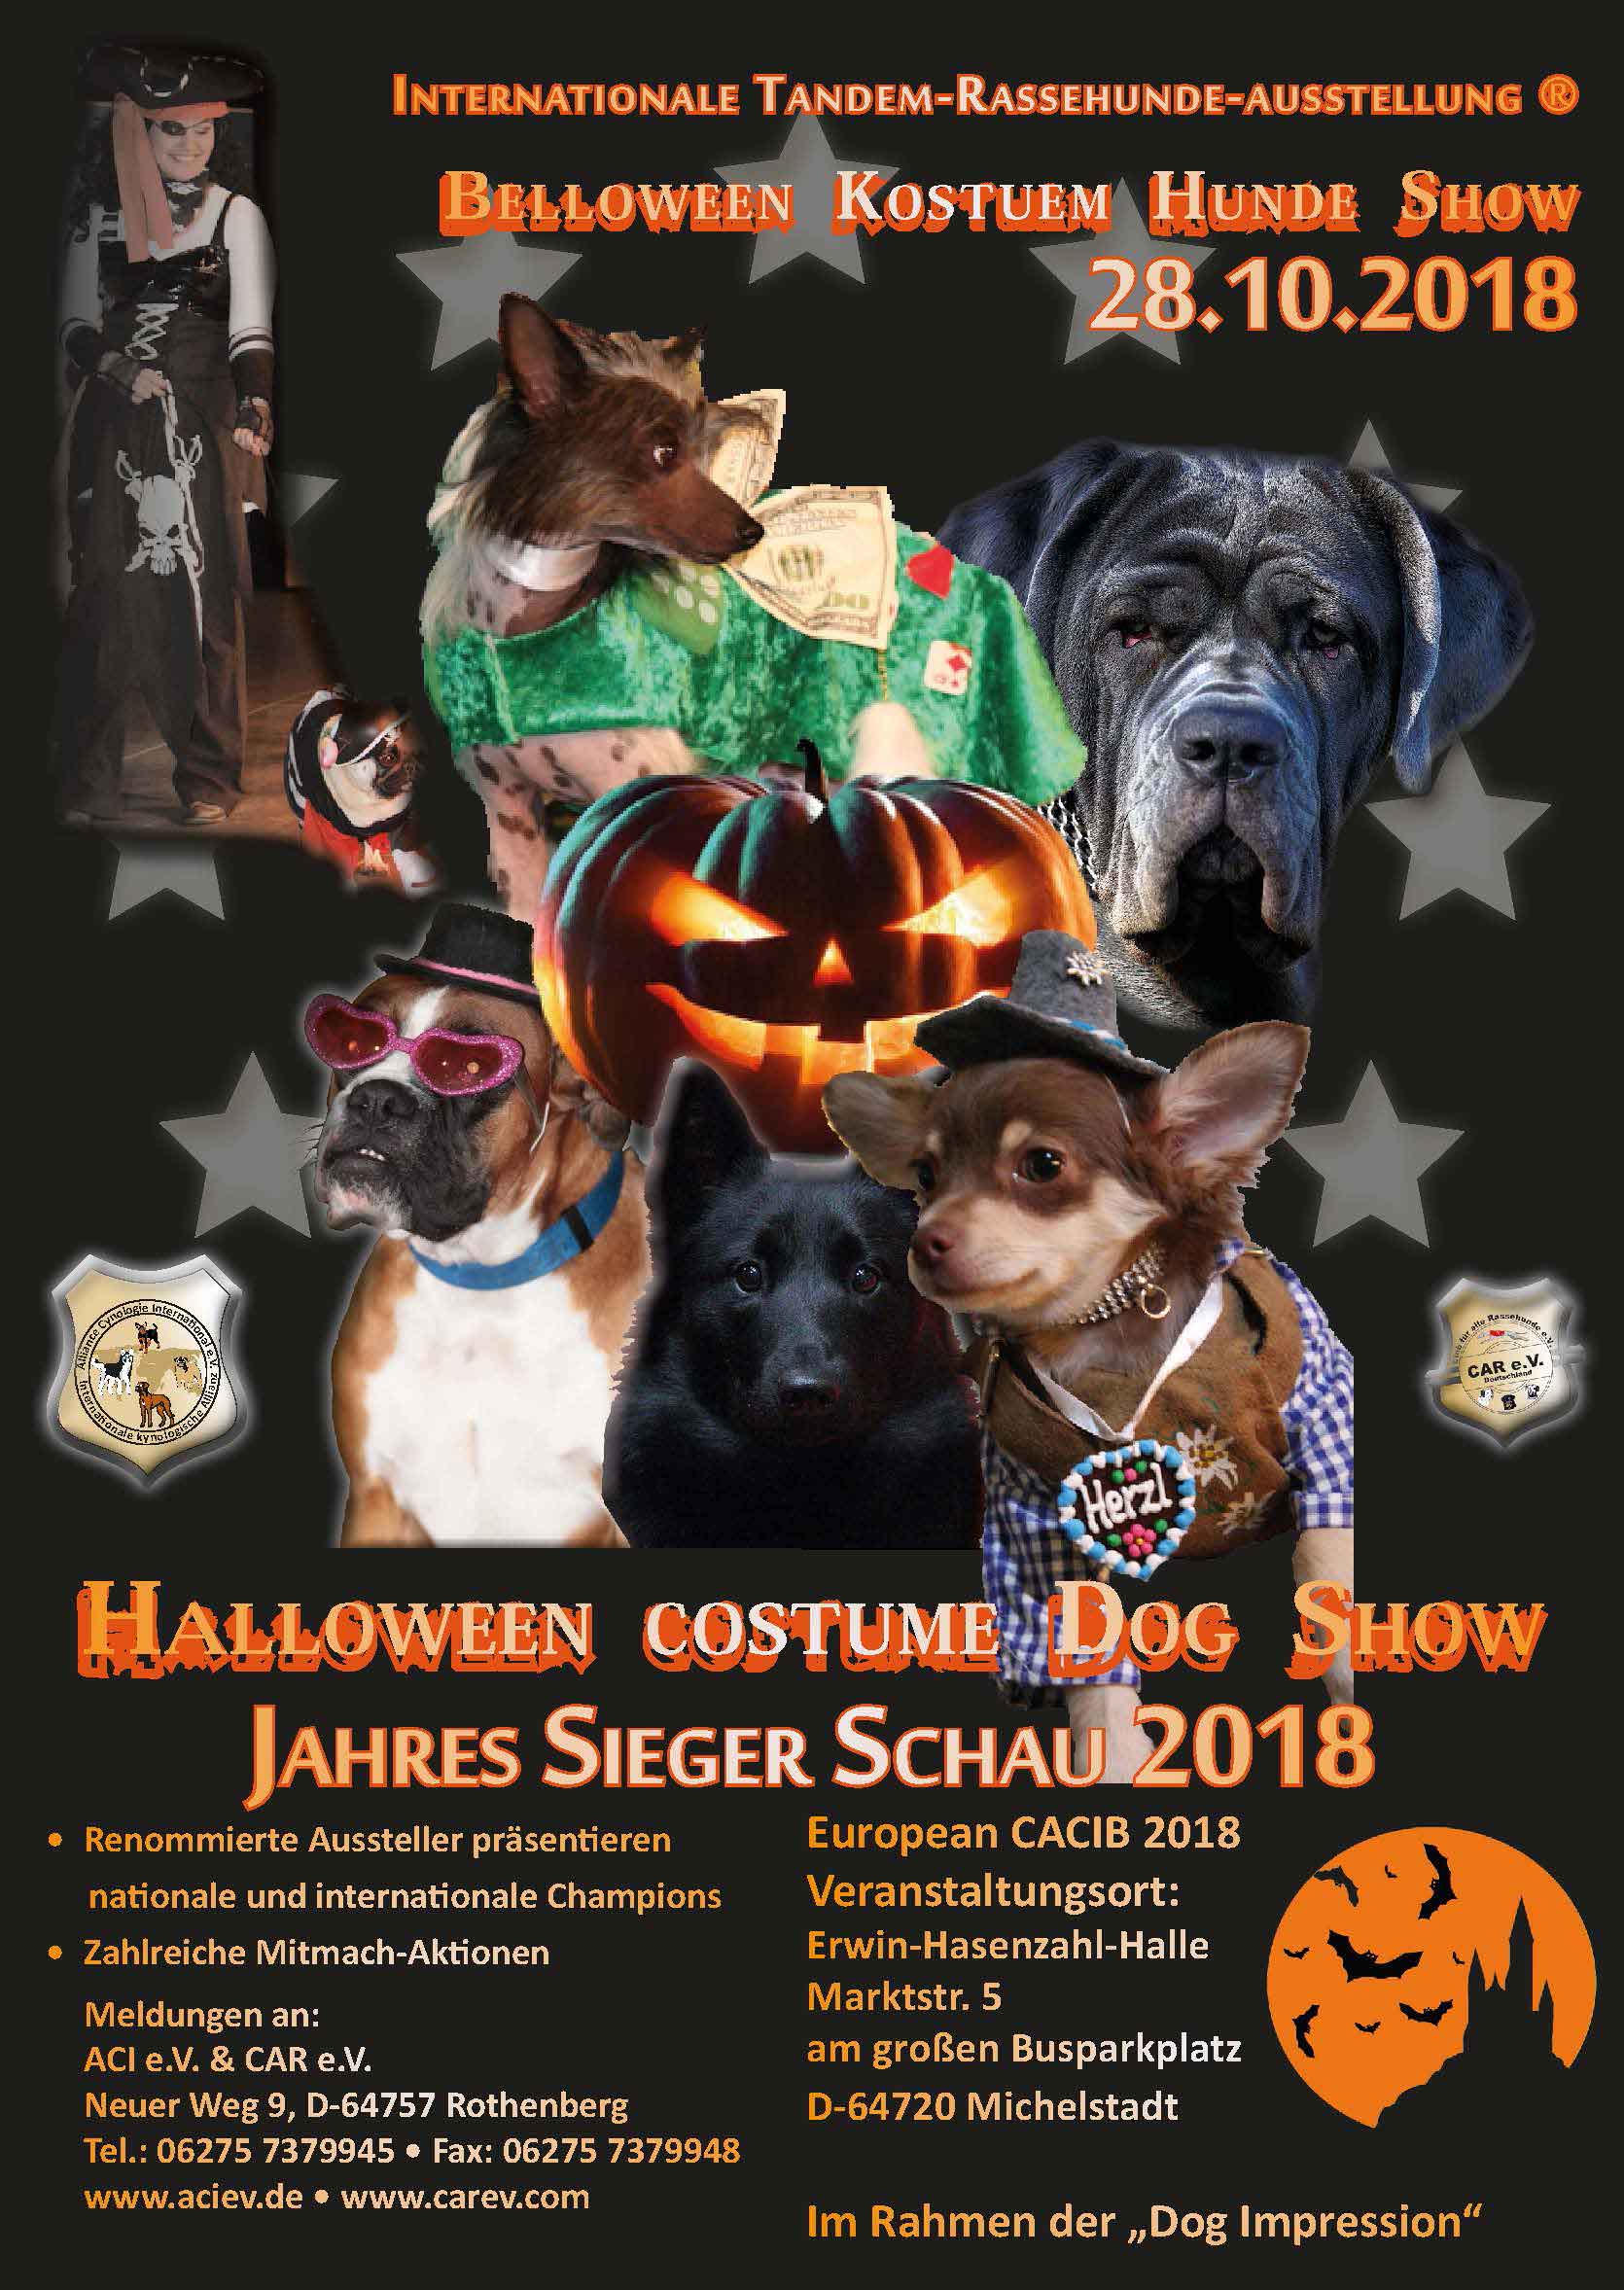 Halloween costume Dog Show & Jahres Sieger Schau 28.10.2018